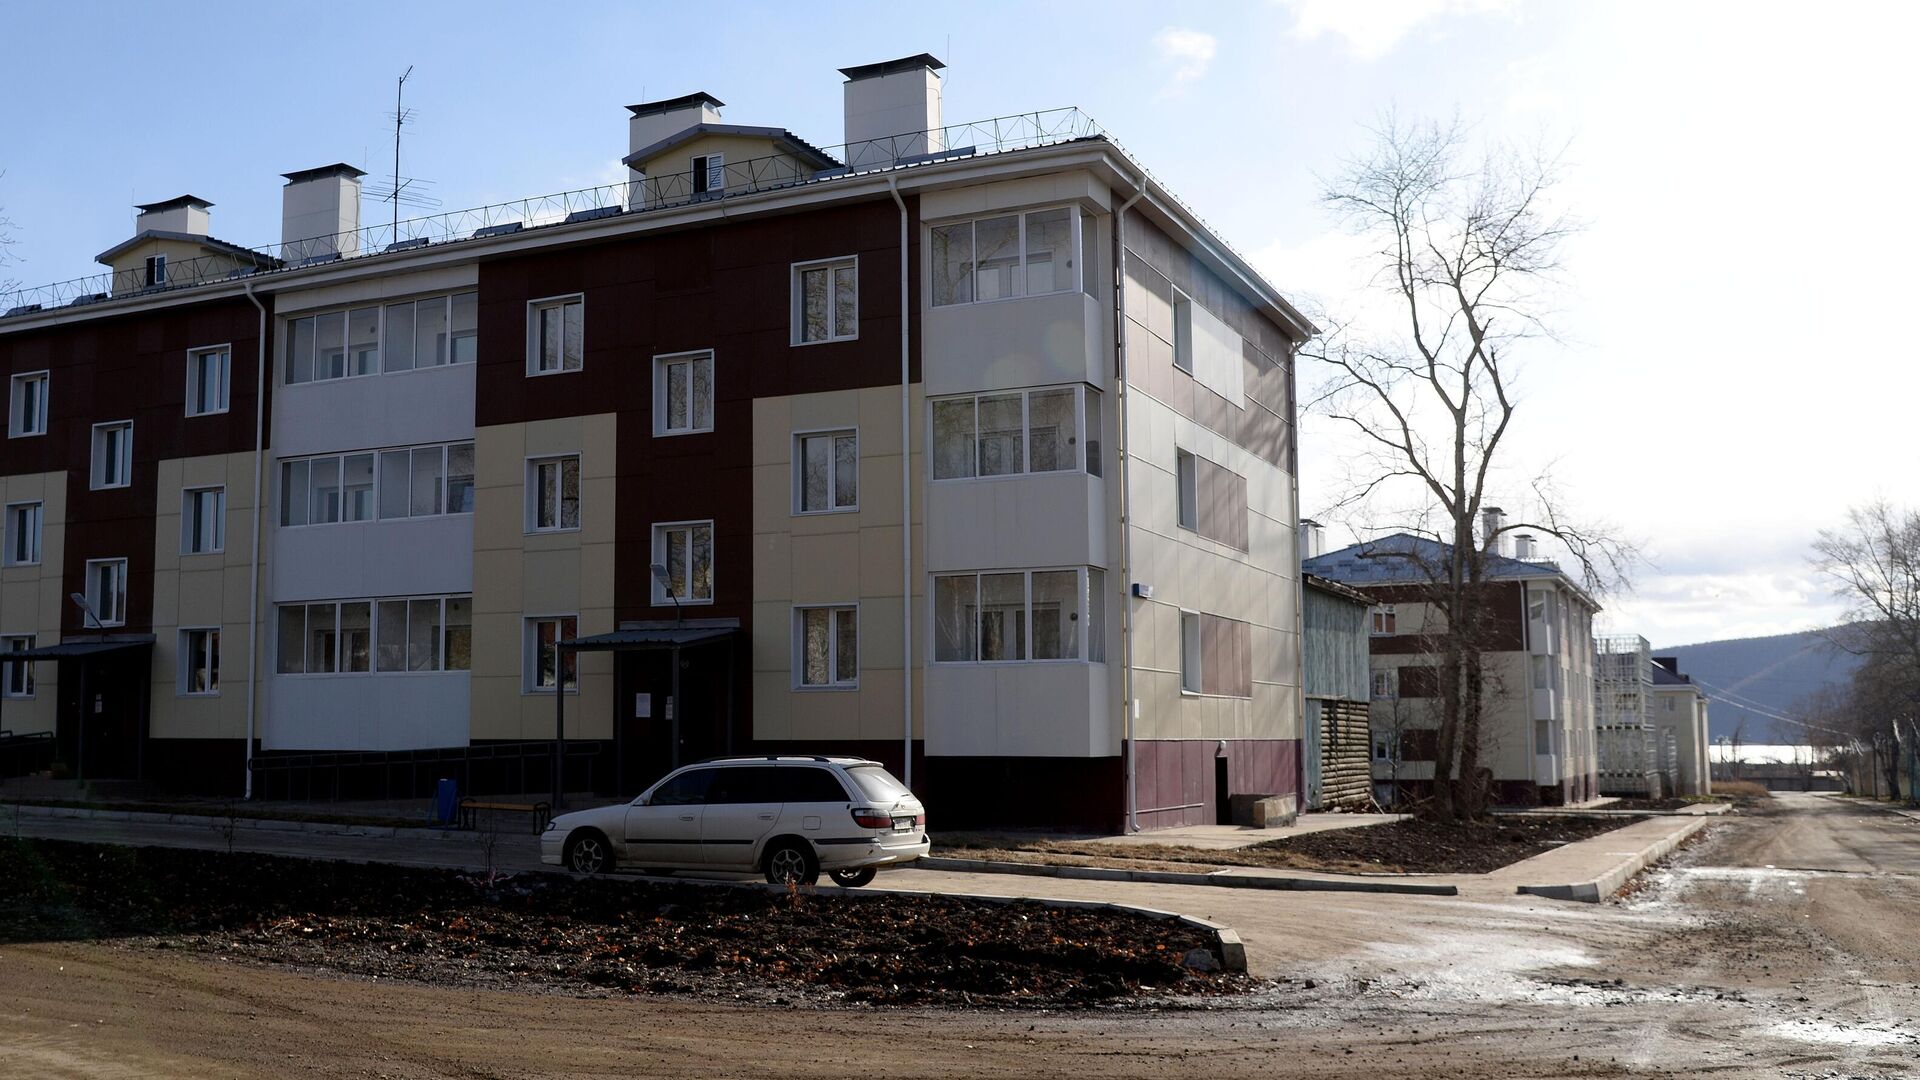 Жилые дома в городе Николаевск-на-Амуре - РИА Новости, 1920, 09.04.2021